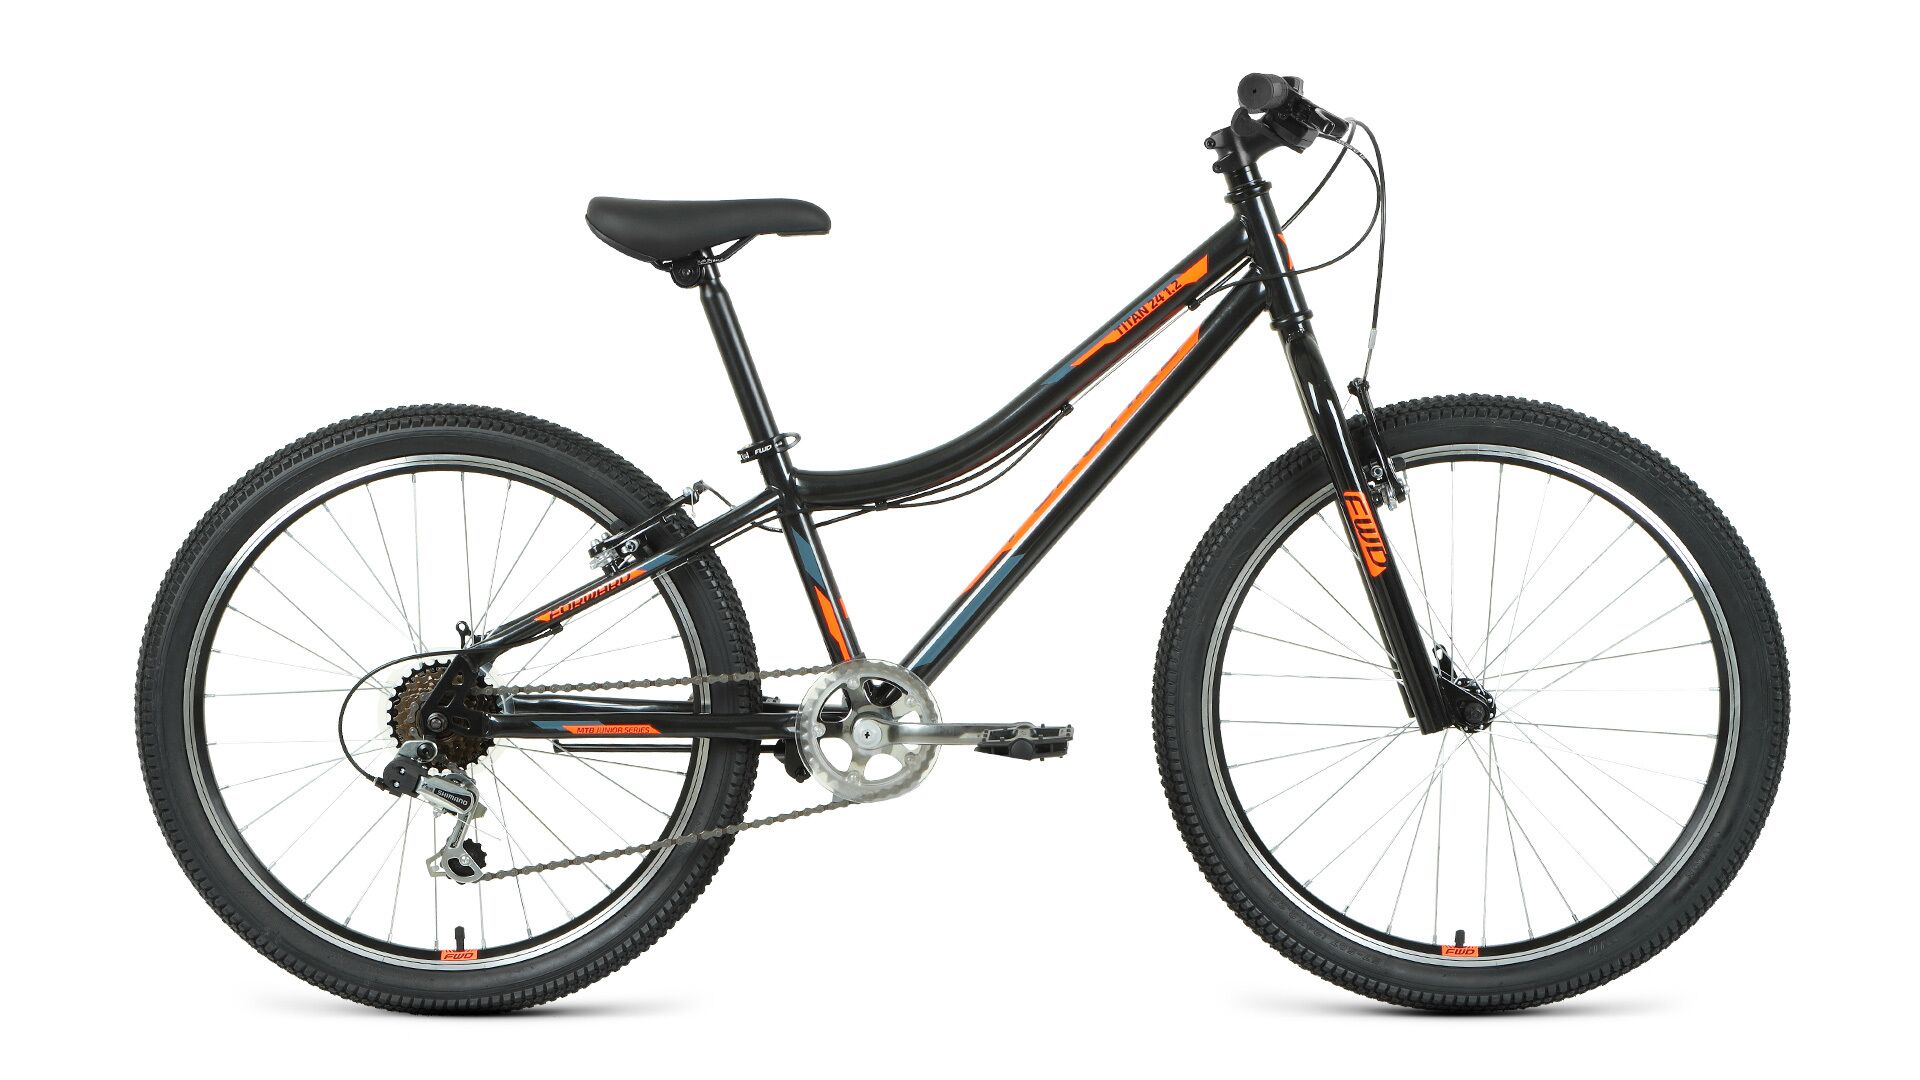 Фото выбрать и купить велосипед forward titan 24 1.0 (2021) чёрный / оранжевый велосипеды с доставкой, в магазине или со склада в СПб - большой выбор для подростка, велосипед forward titan 24 1.0 (2021) чёрный / оранжевый велосипеды в наличии - интернет-магазин Мастерская Тимура